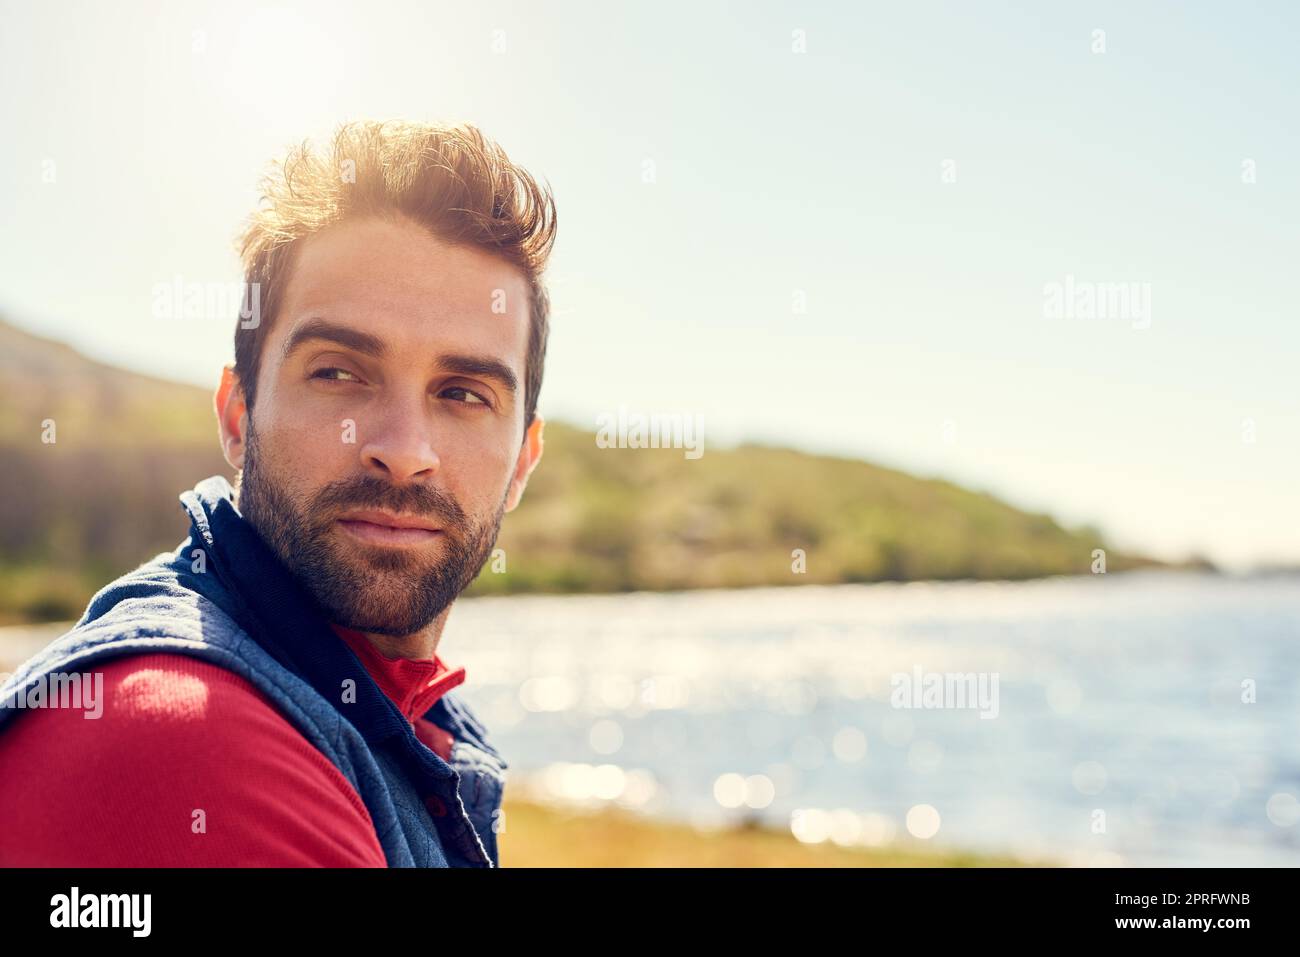 Recueillant ses pensées dans la nature. Un randonneur attentionné qui admirait la vue sur un lac par une journée ensoleillée. Banque D'Images